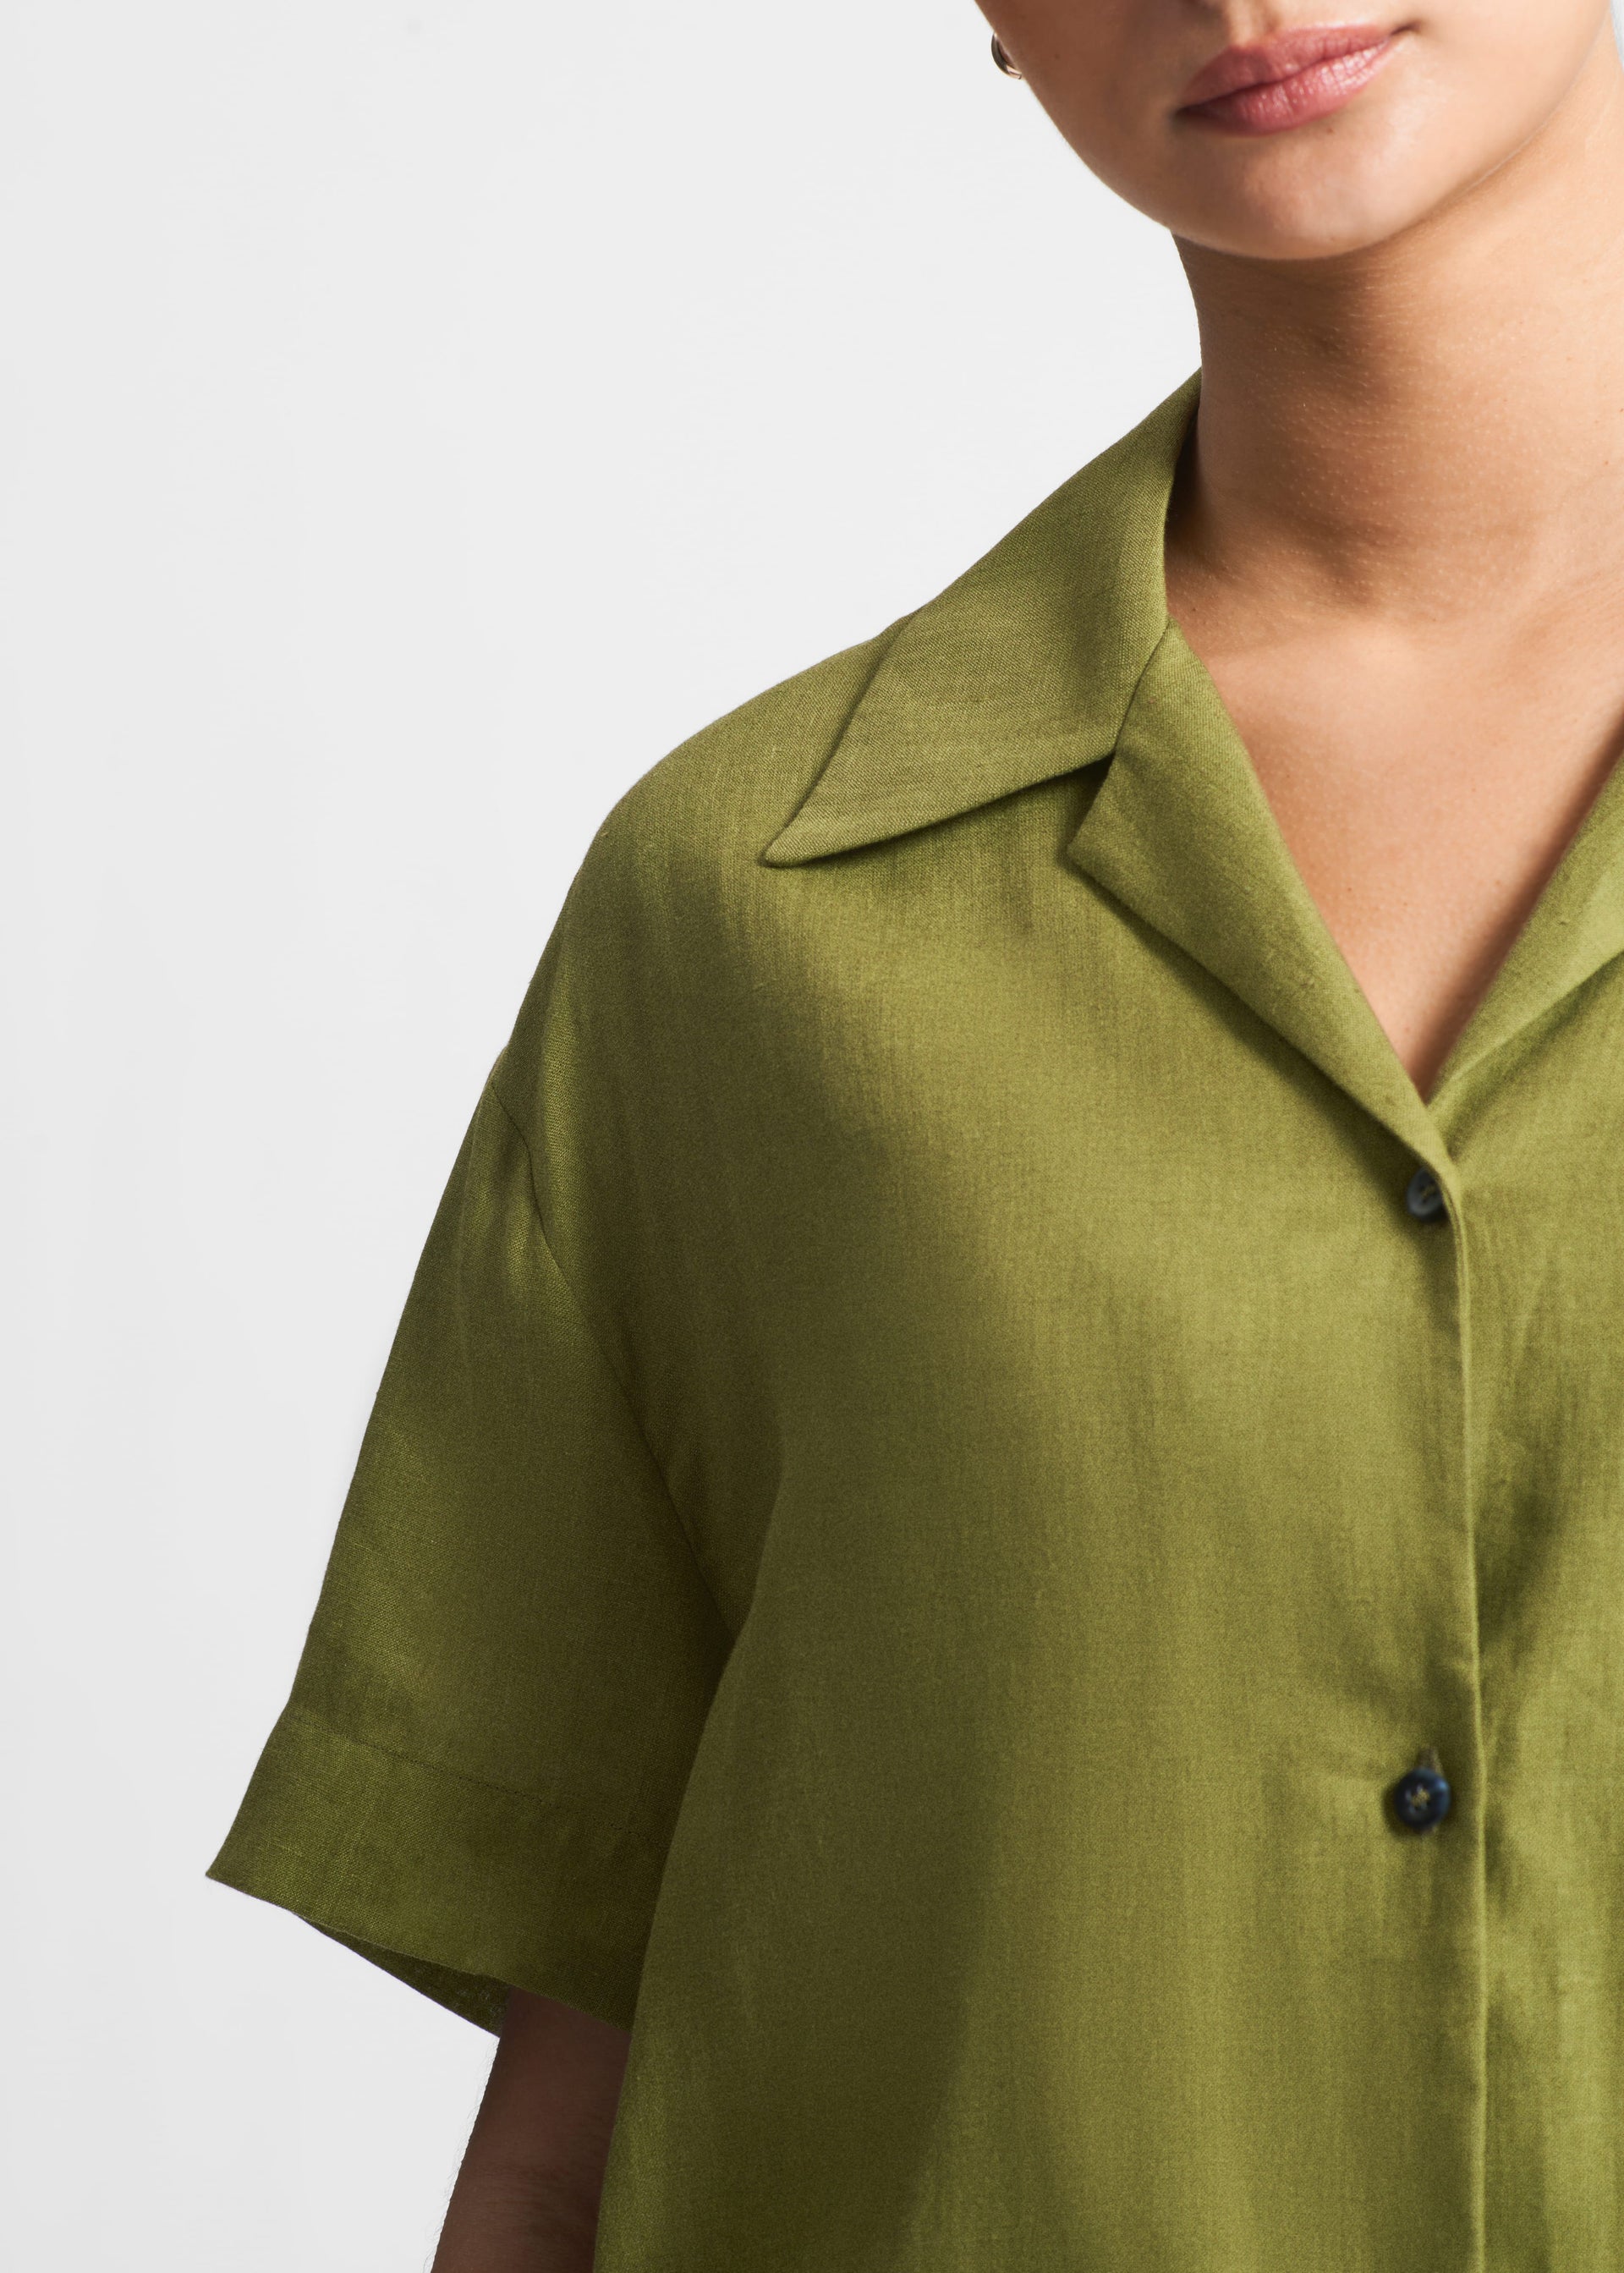 Prague Matcha Green Organic Linen Shirt